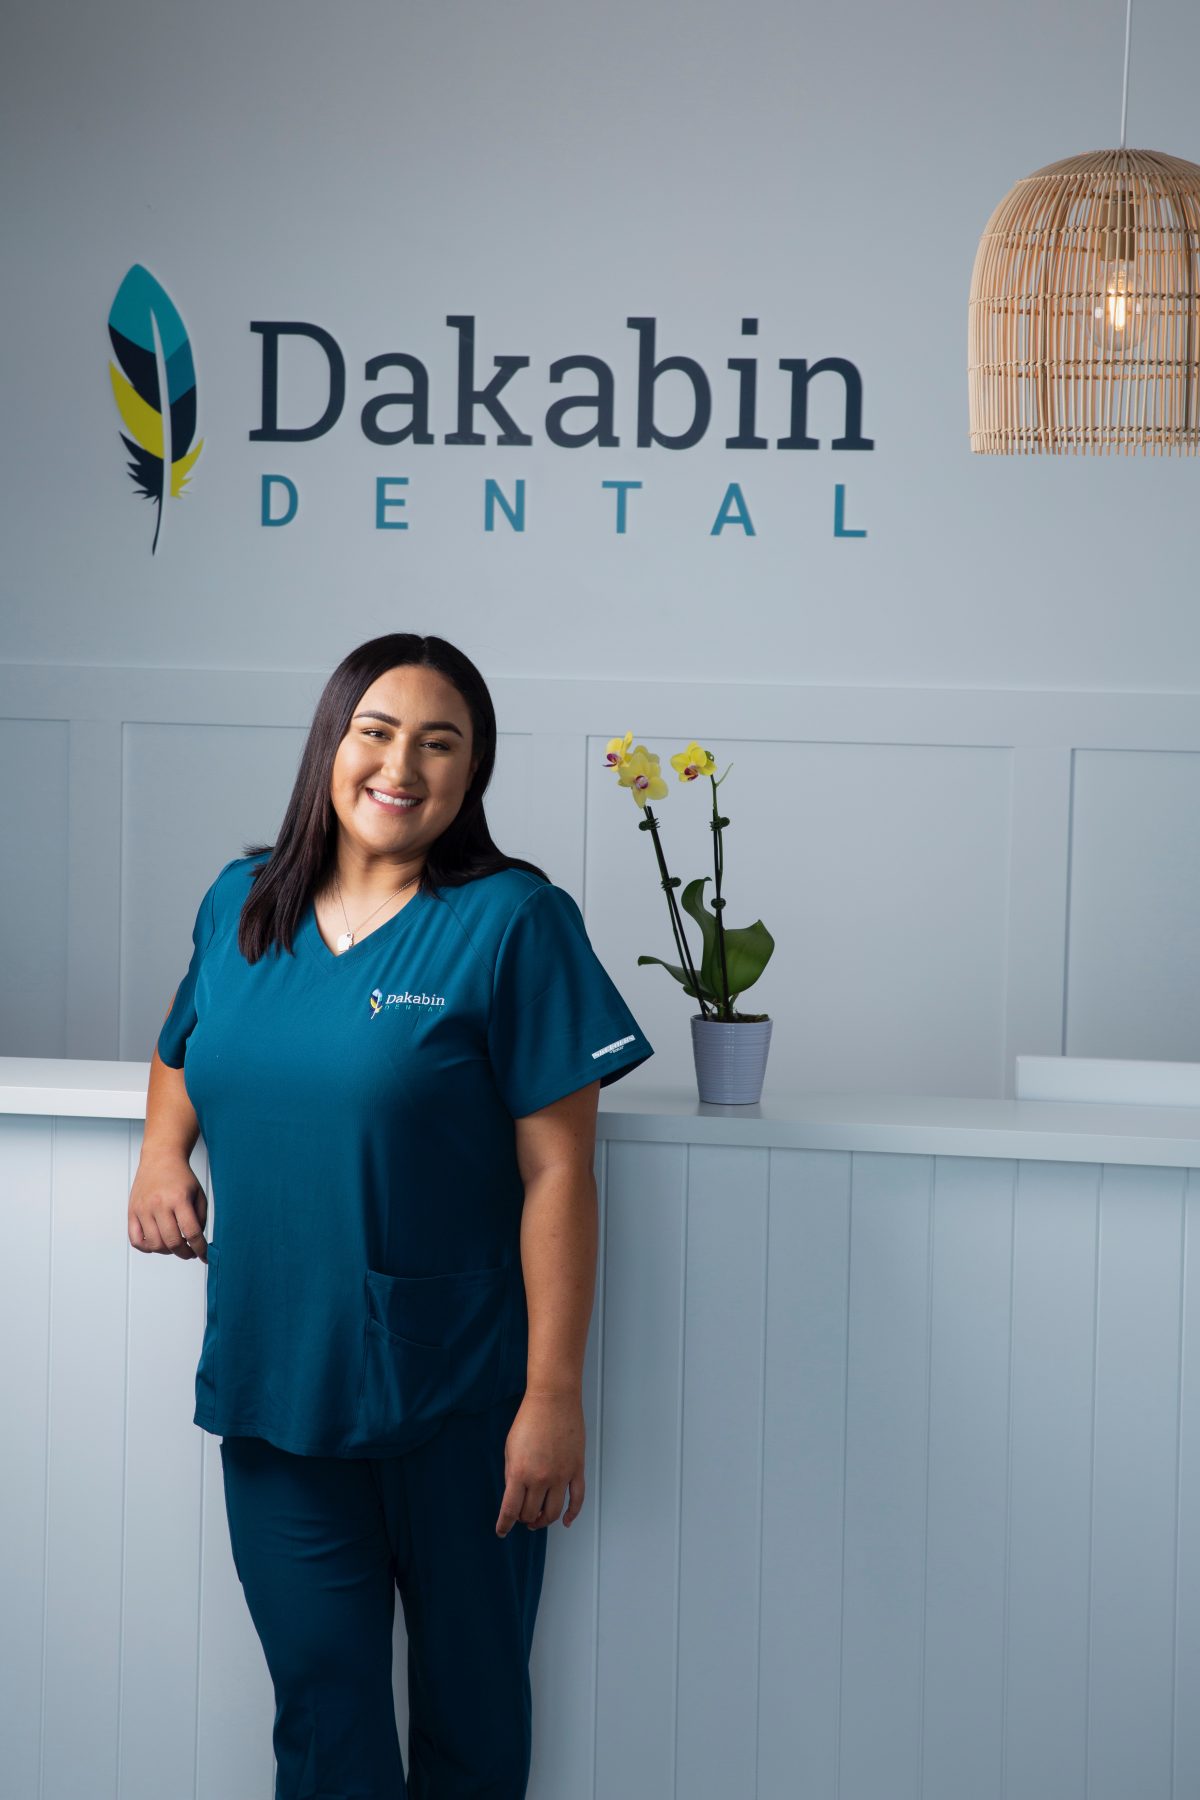 Dakabin-Dental-0029-1200x1800.jpeg